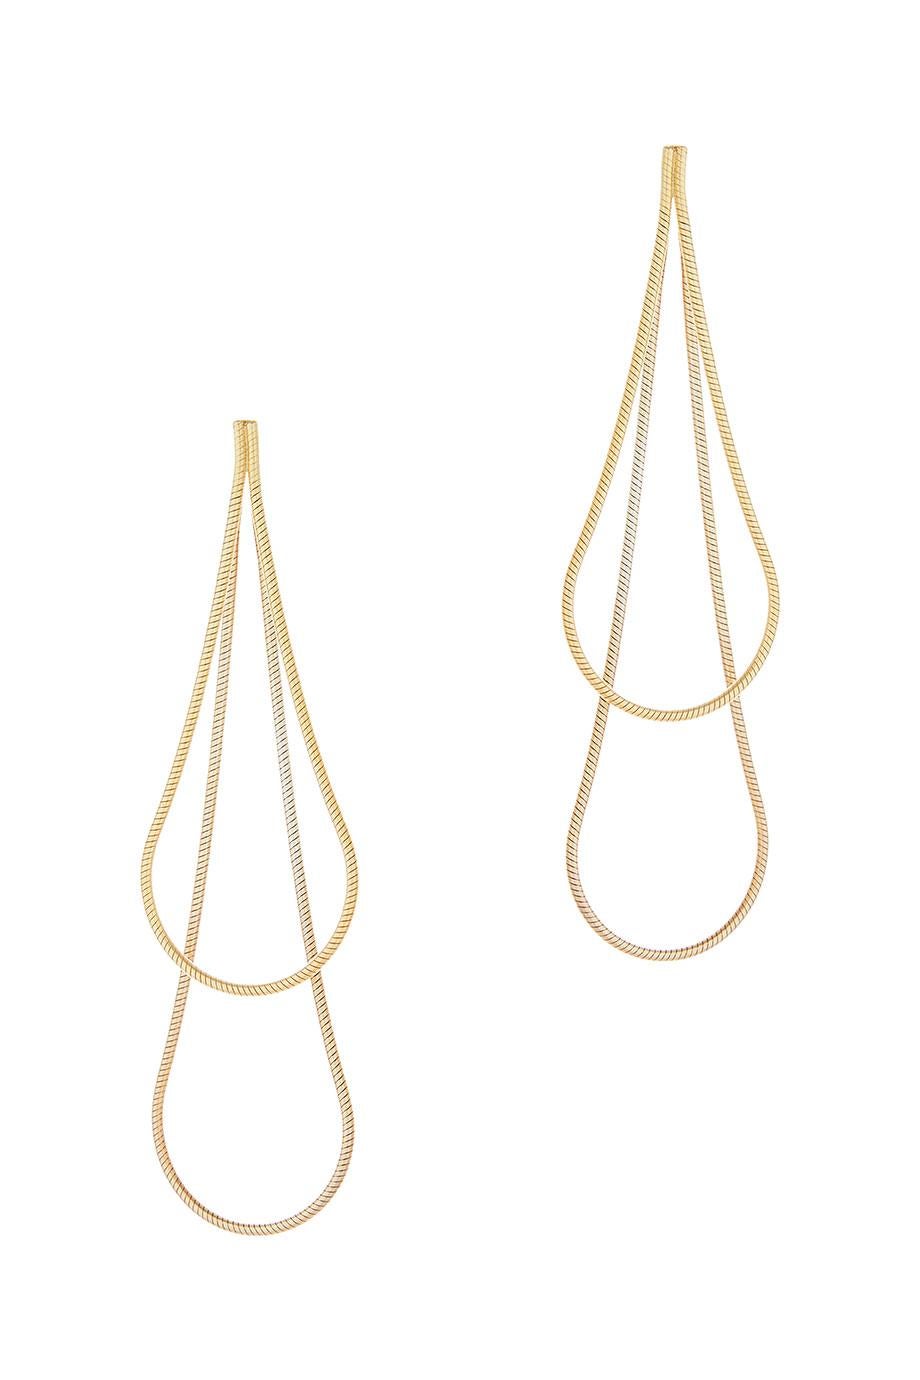 Earrings Smart Long Drops Snake Chain 18 Karat Gold-Plated Silver Greek Jewelry For Sale 2